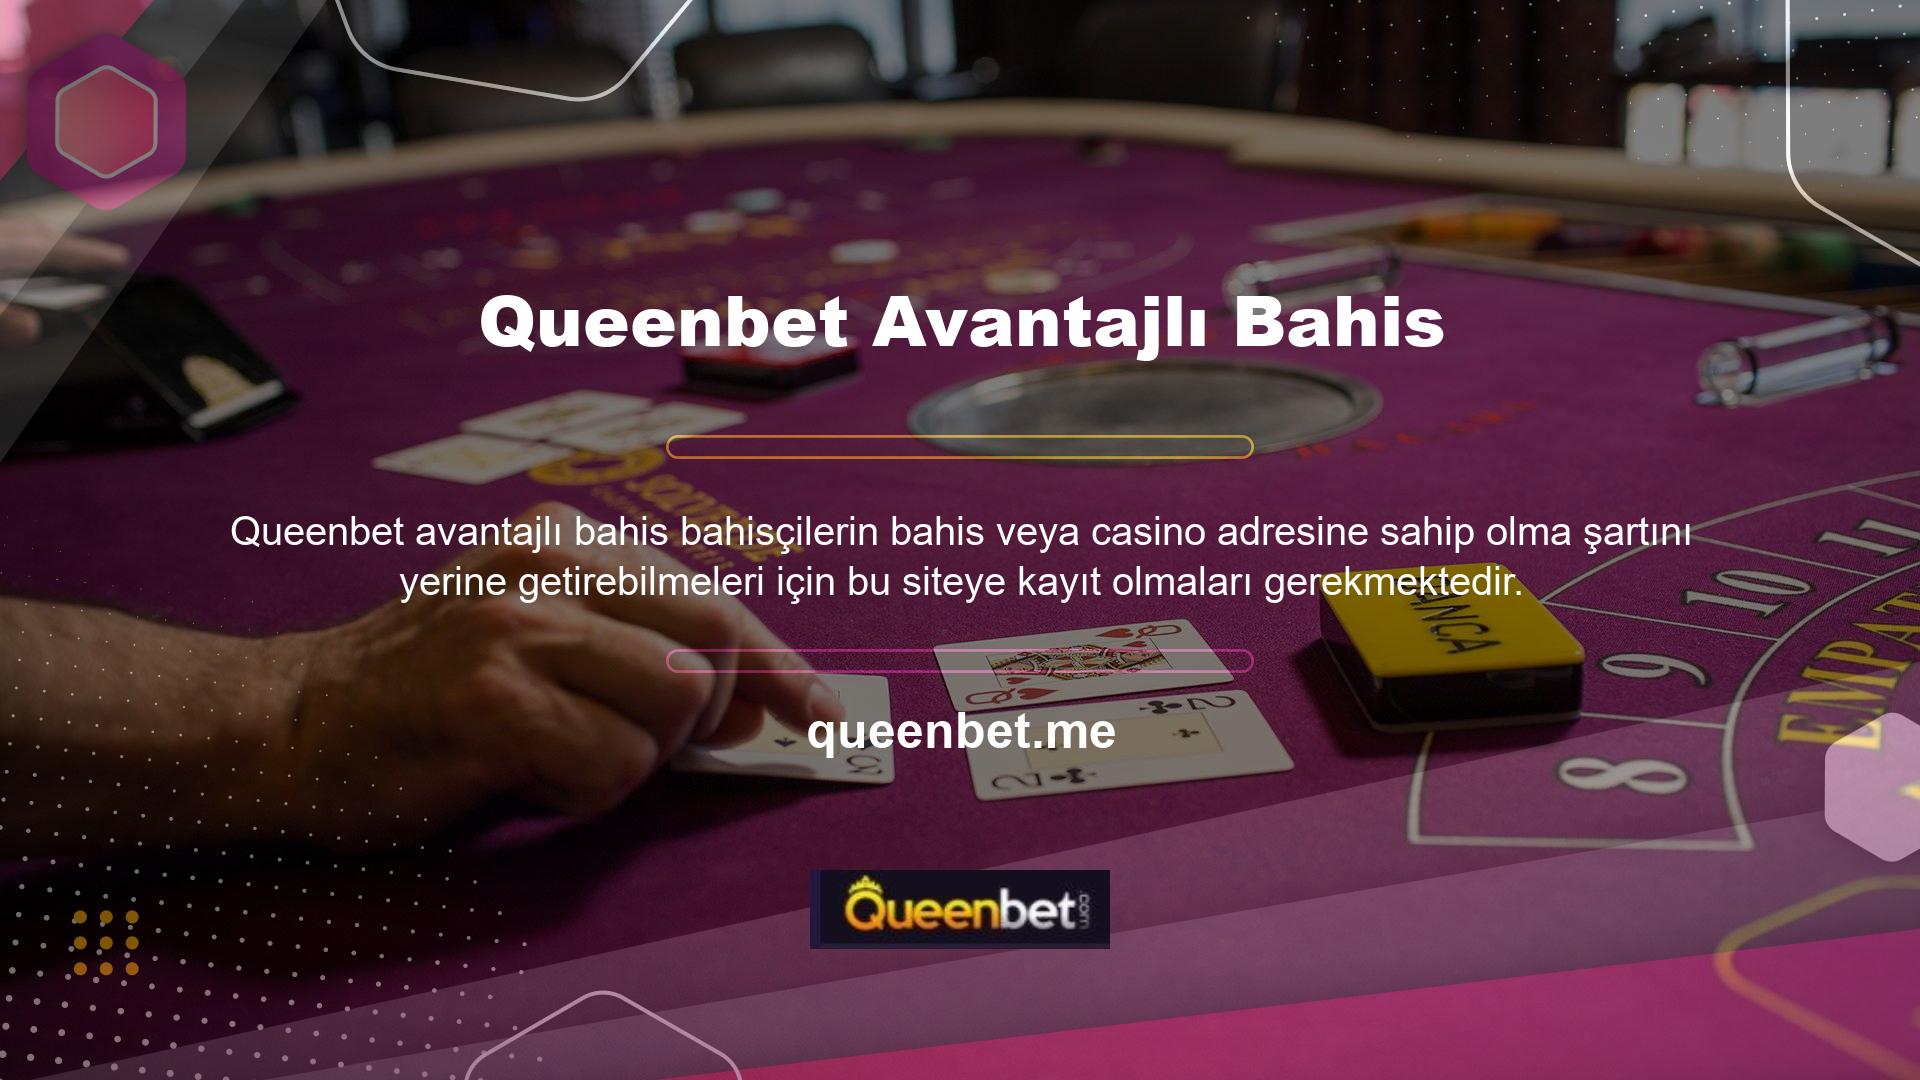 Queenbet oyun sitesinde pek çok ilginç konu var ancak nasıl erişebilirim' sorgusu çıkıyor